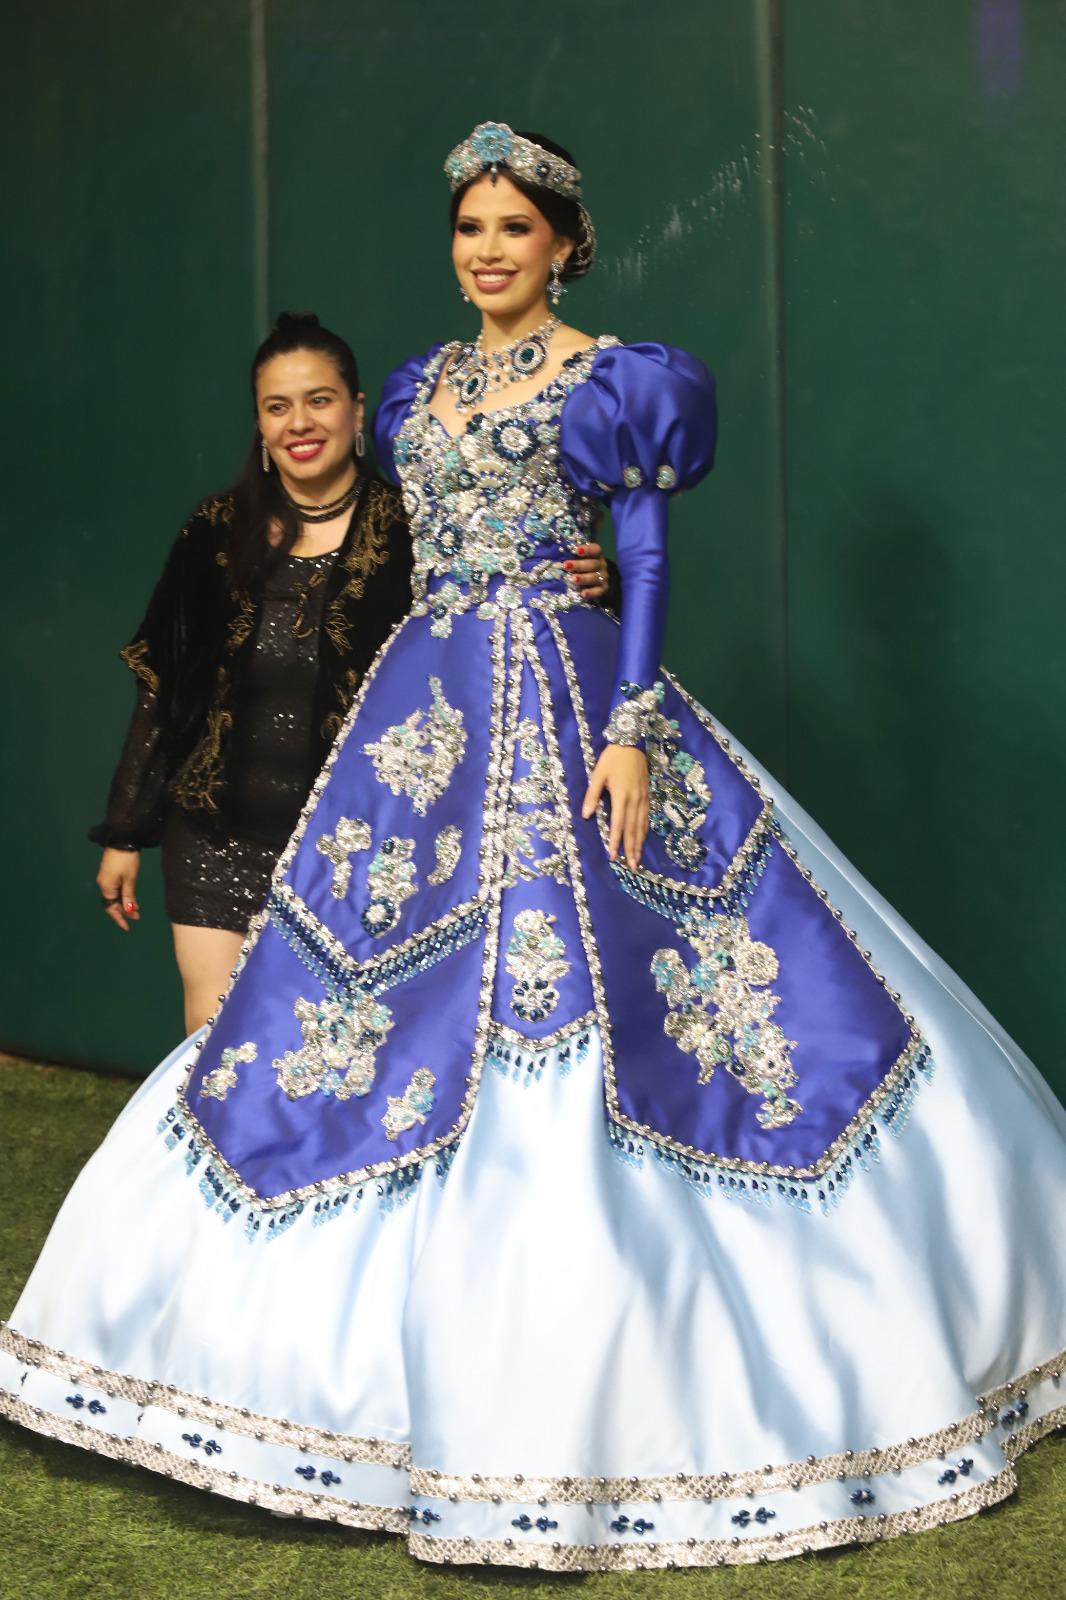 $!Claudina Domingo y Siu Ling I, Reina de los Juegos Florales.